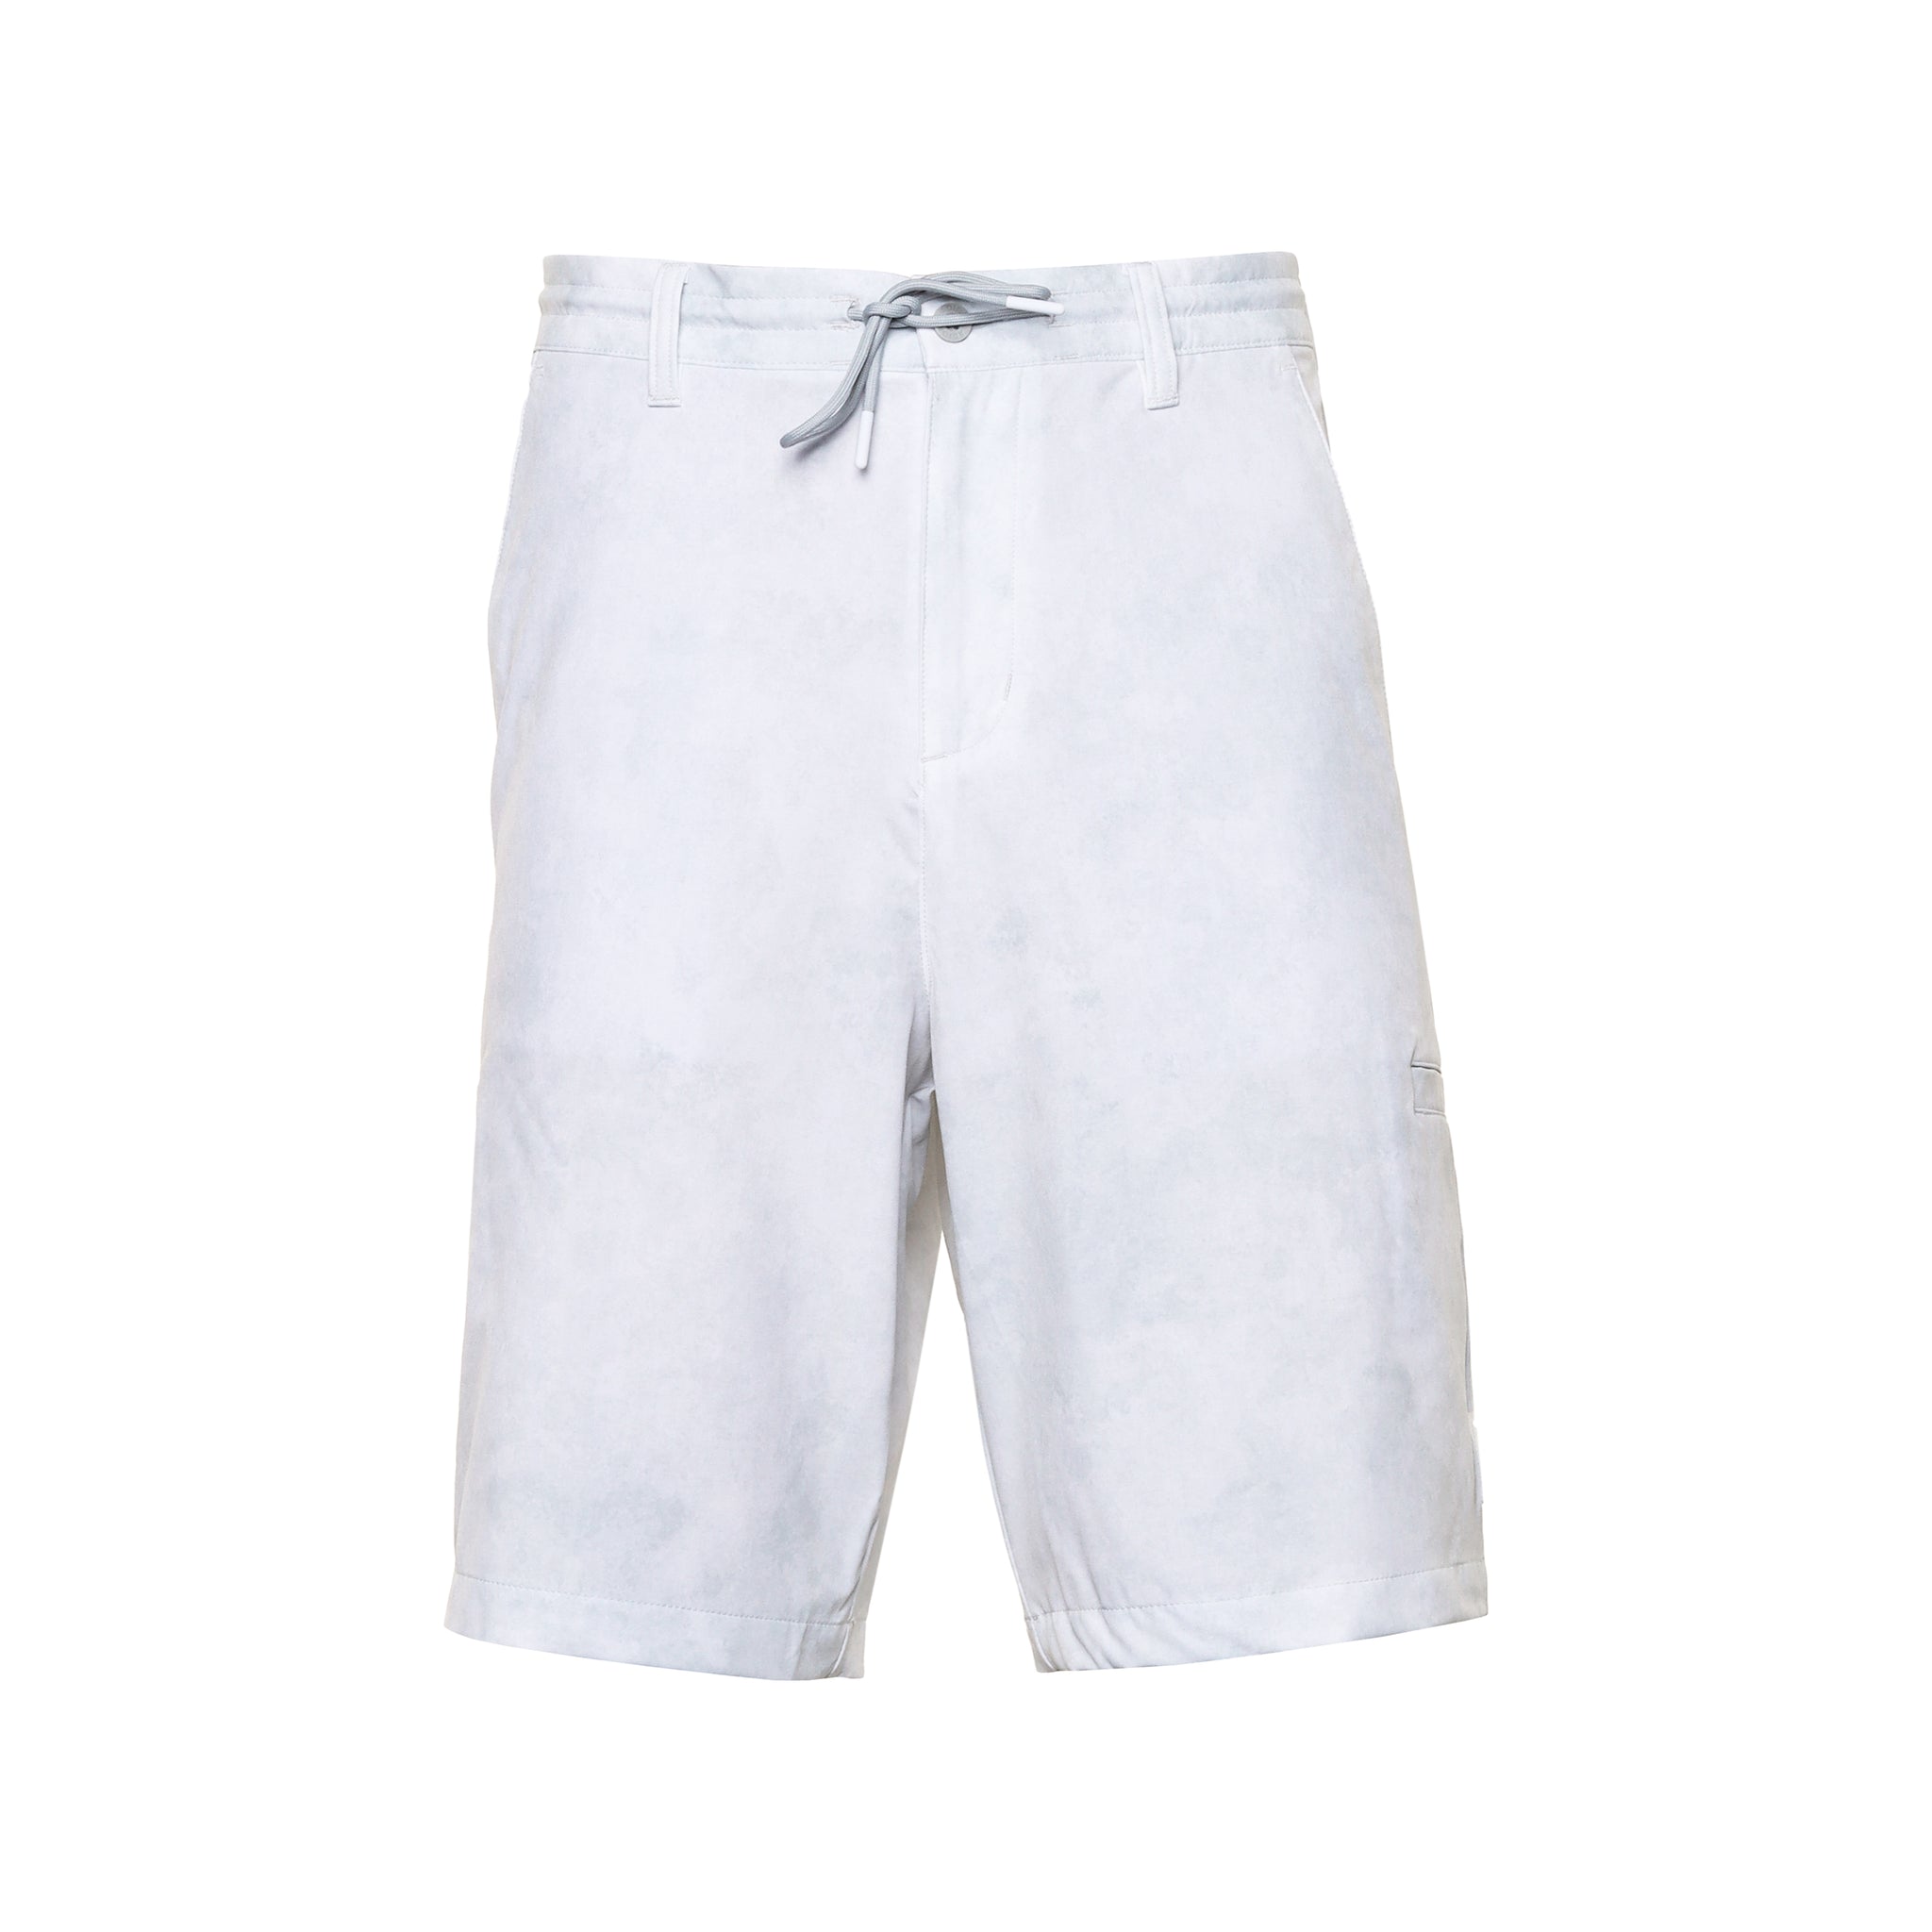 adidas-golf-adicross-shorts-it8311-clear-grey